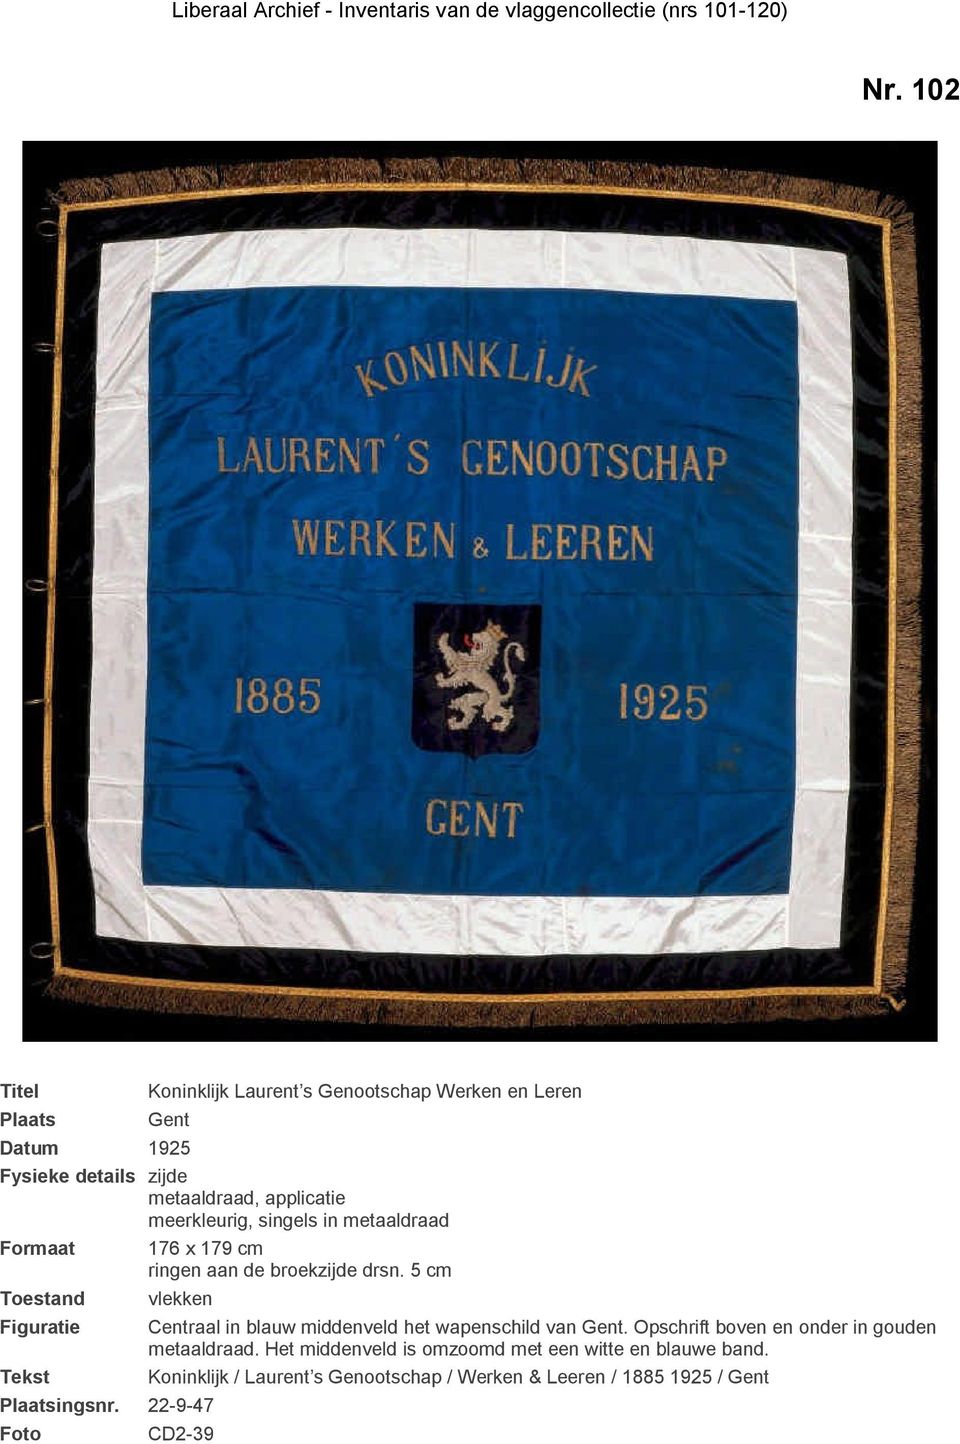 22-9-47 Centraal in blauw middenveld het wapenschild van Gent. Opschrift boven en onder in gouden metaaldraad.